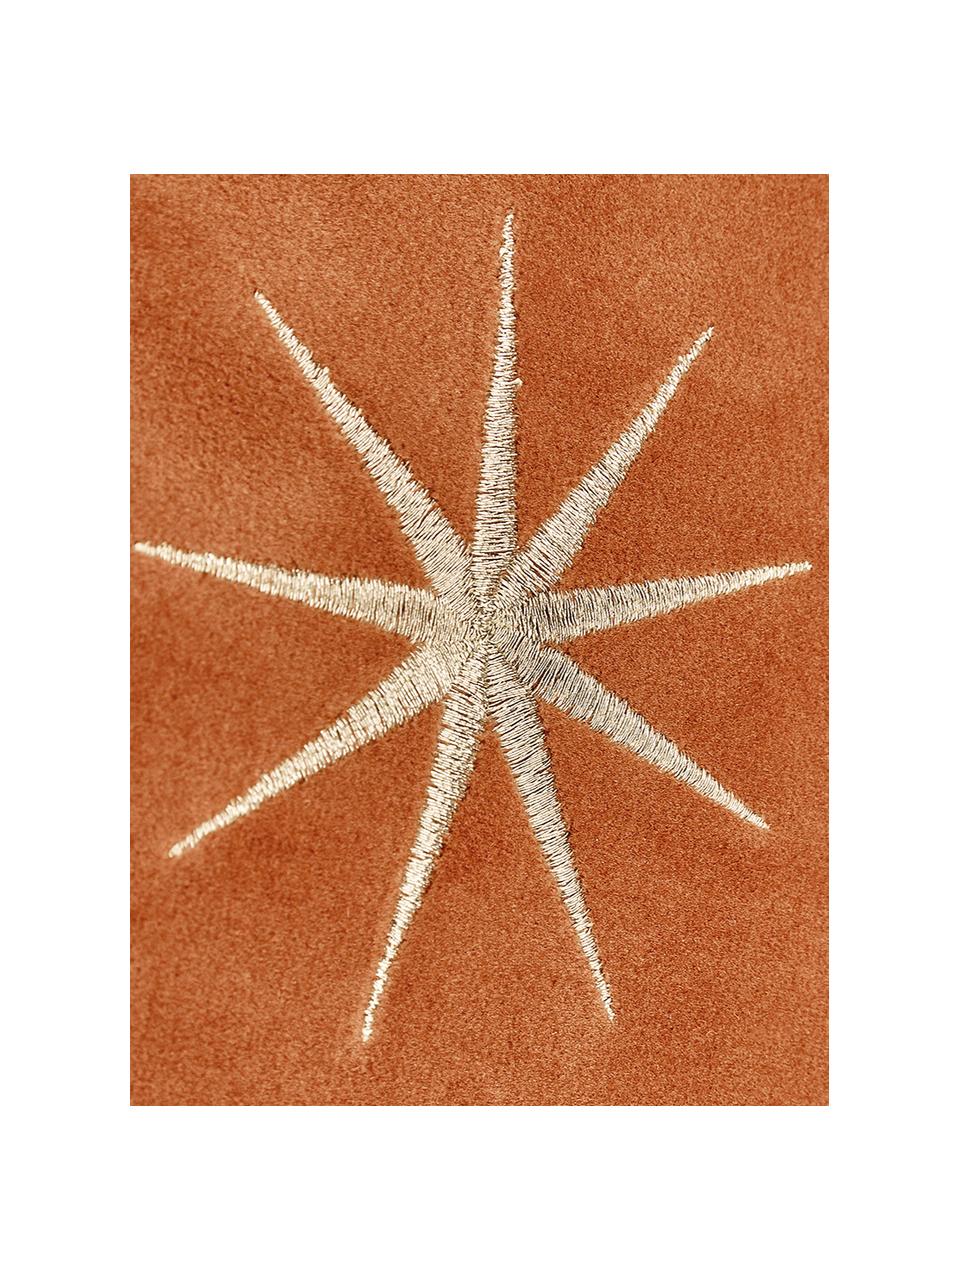 Sametový povlak na polštář se zimním motivem hvězd Stars, Oranžová